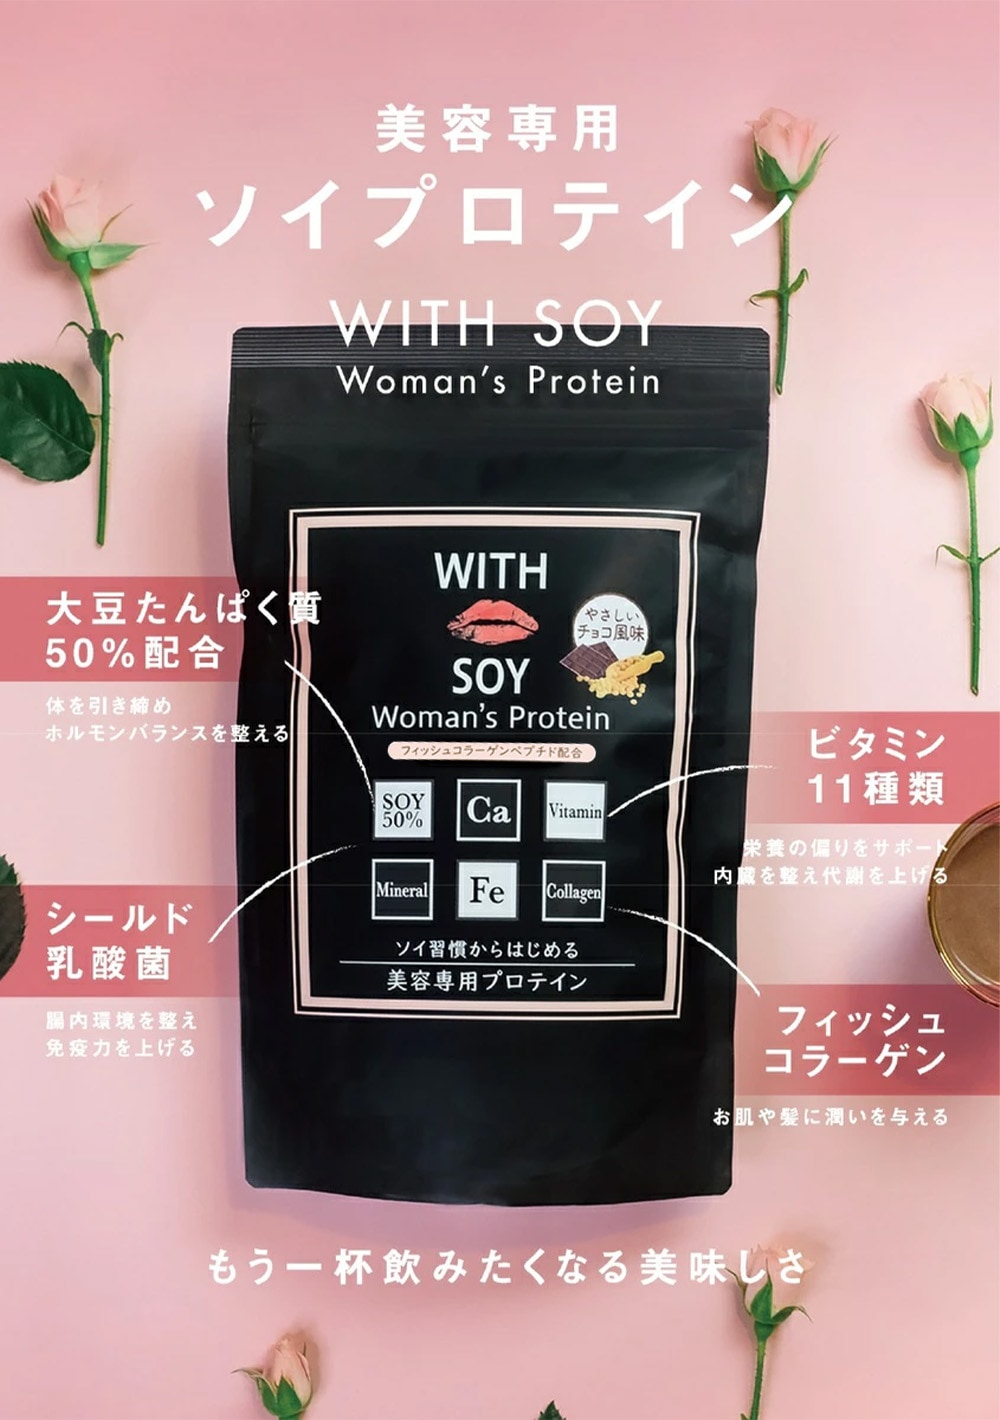 ウィズソイ ウーマンズプロテイン 20g チョコレート味 WITH SOY Woman’s Protein 美容成分入り ソイプロテイン